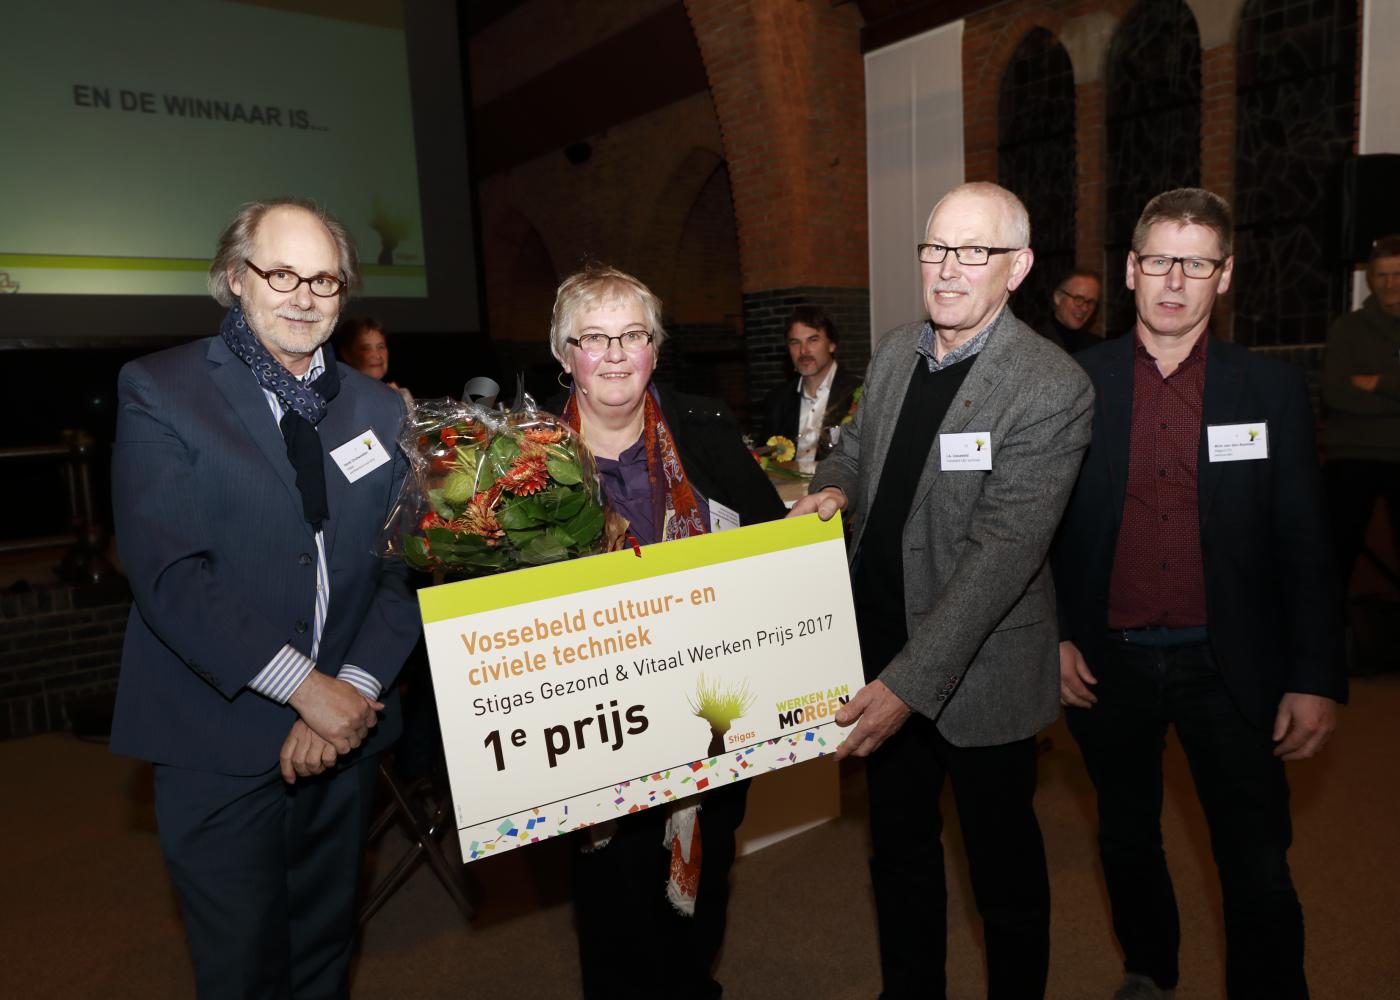 Vossebeld - cultuur- en civiele techniek wint de Stigas gezond & Vitaal Werken Prijs 2017